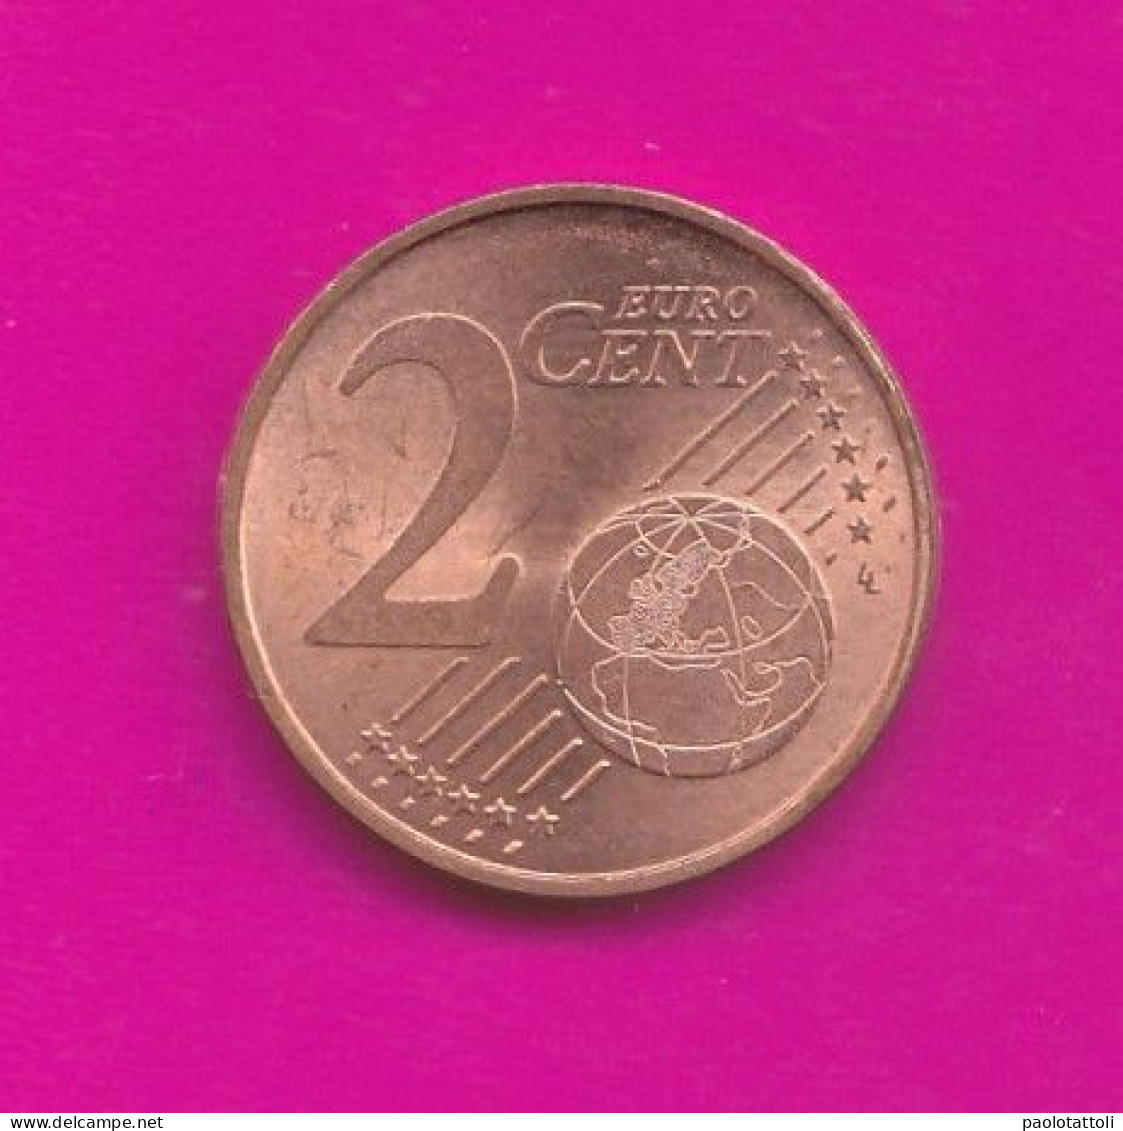 Germany, D 2021- 2 Euro Cent- Nickel Brass- Obverse Oak Leaf. Reverse Denomination- SPL, EF, SUP, VZ- - Allemagne